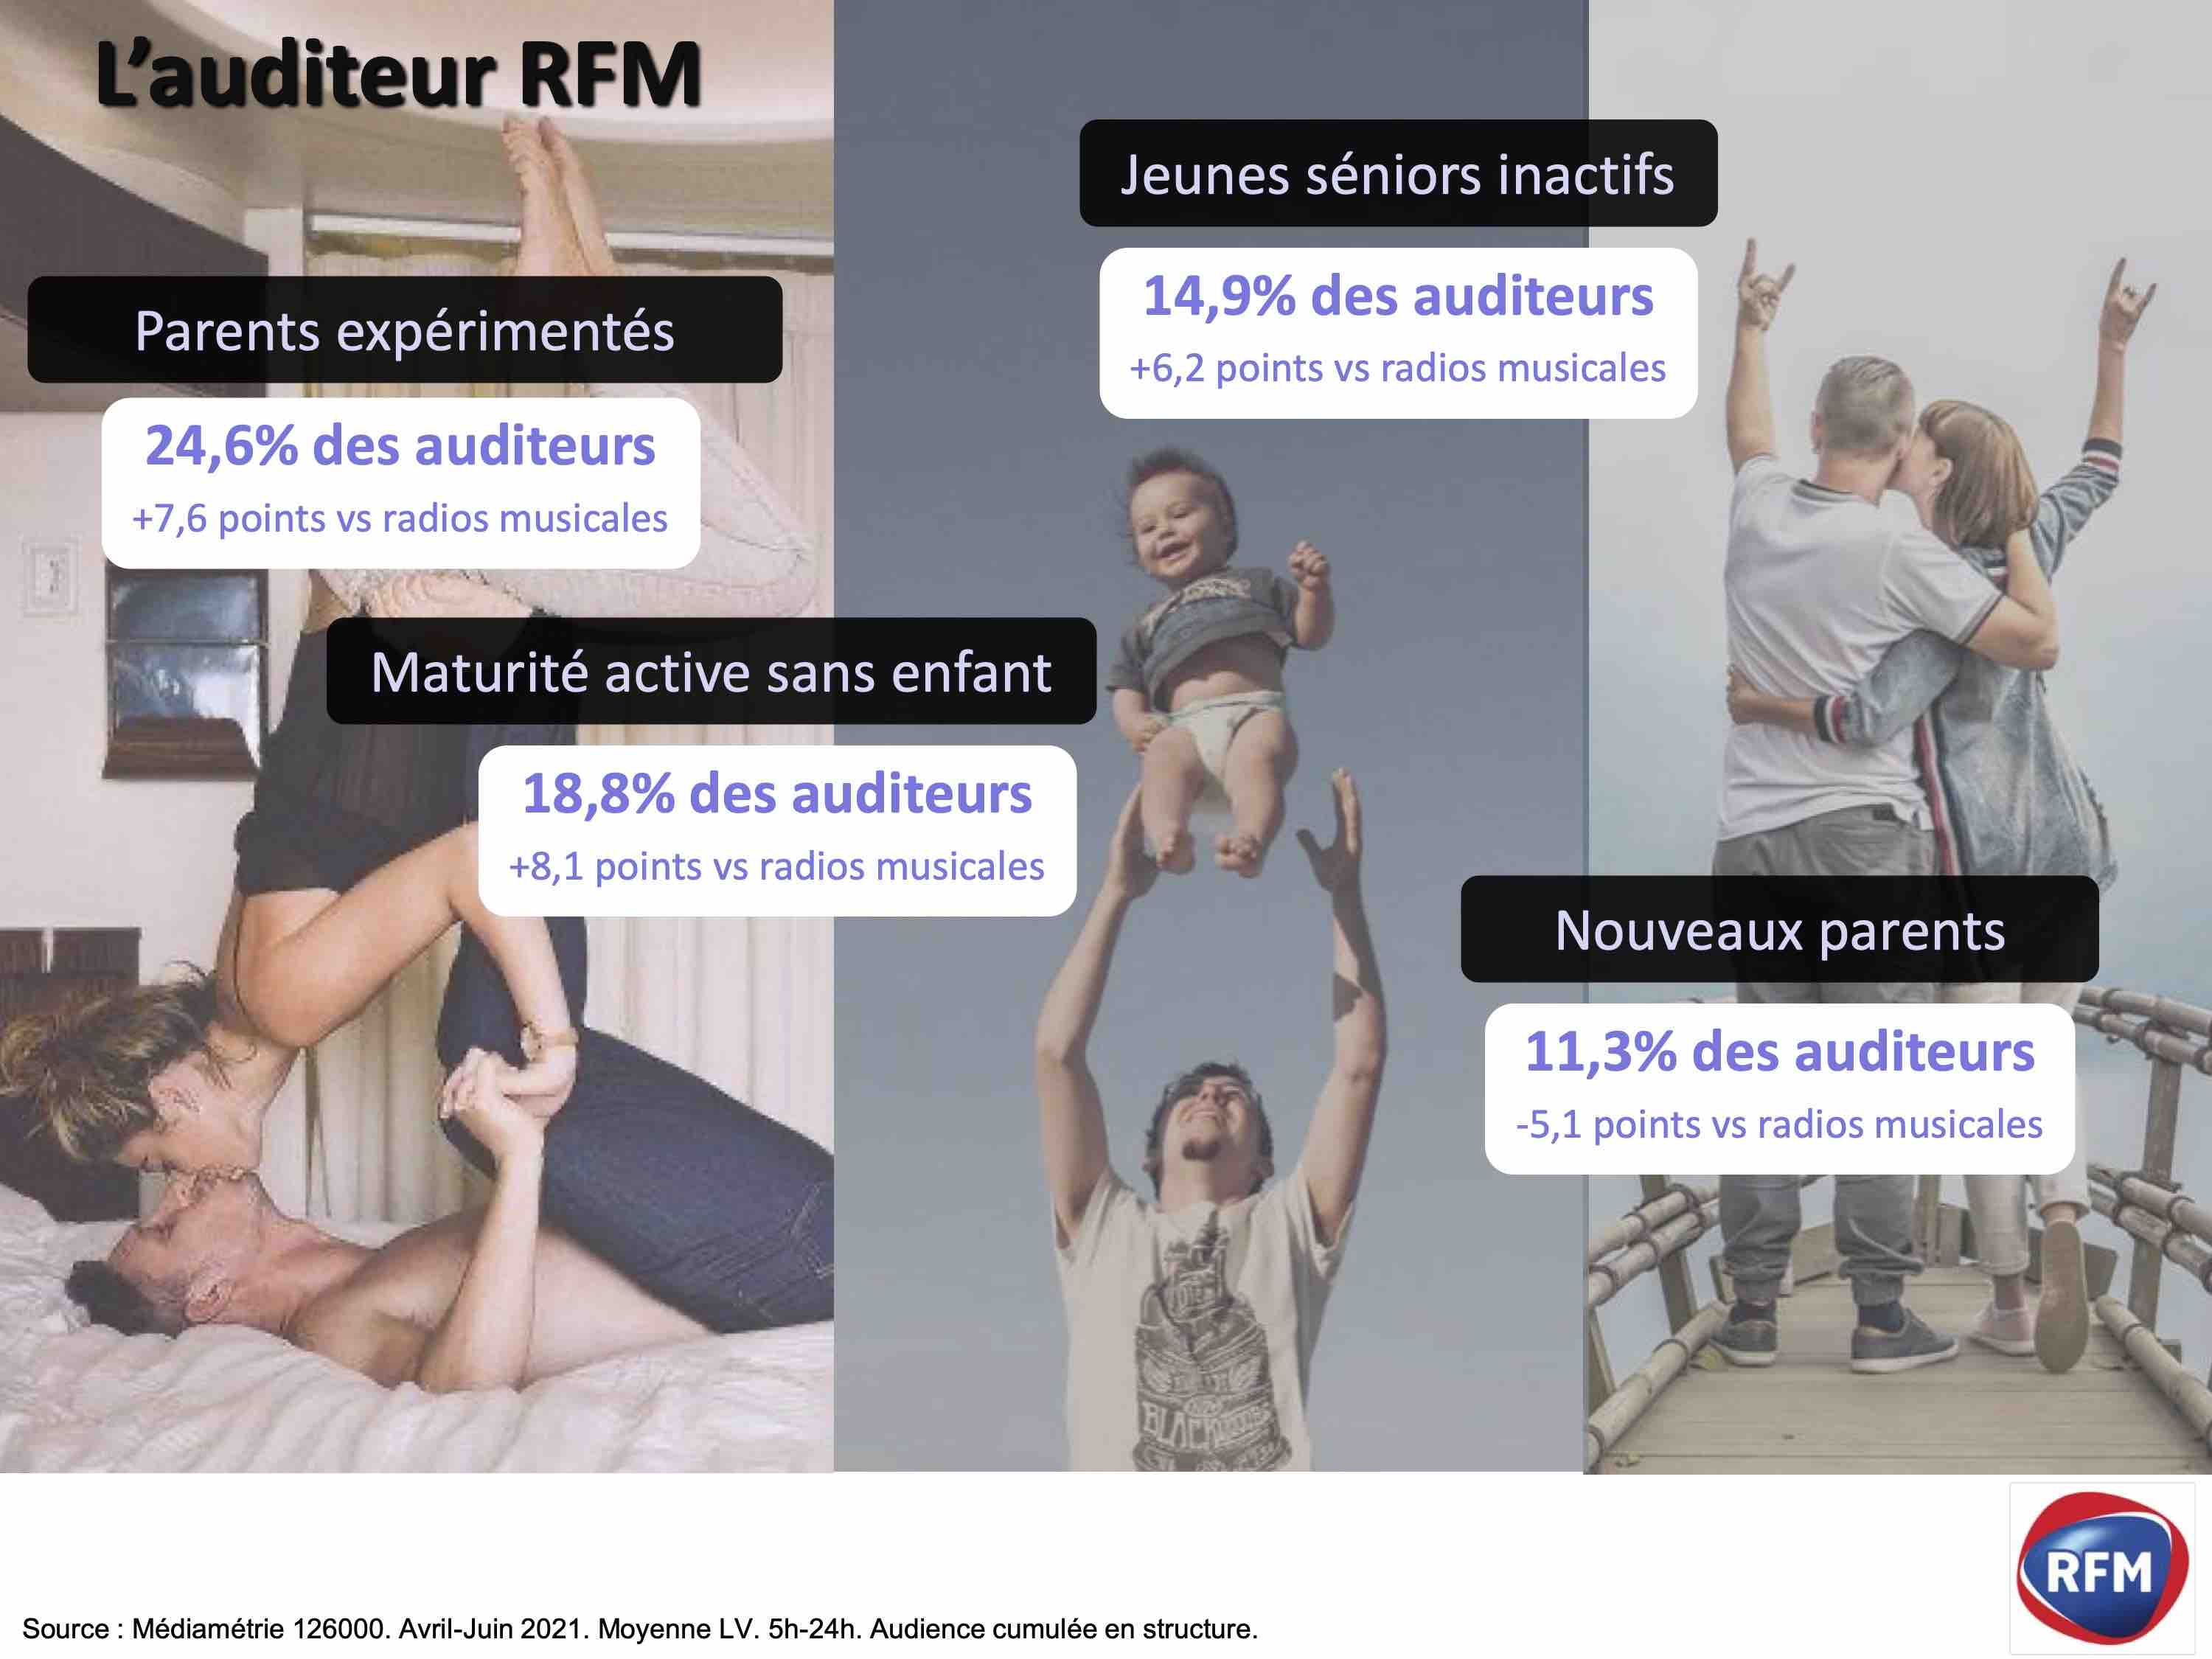 Profil des auditeurs radio RFM consommateur a fort potentiel